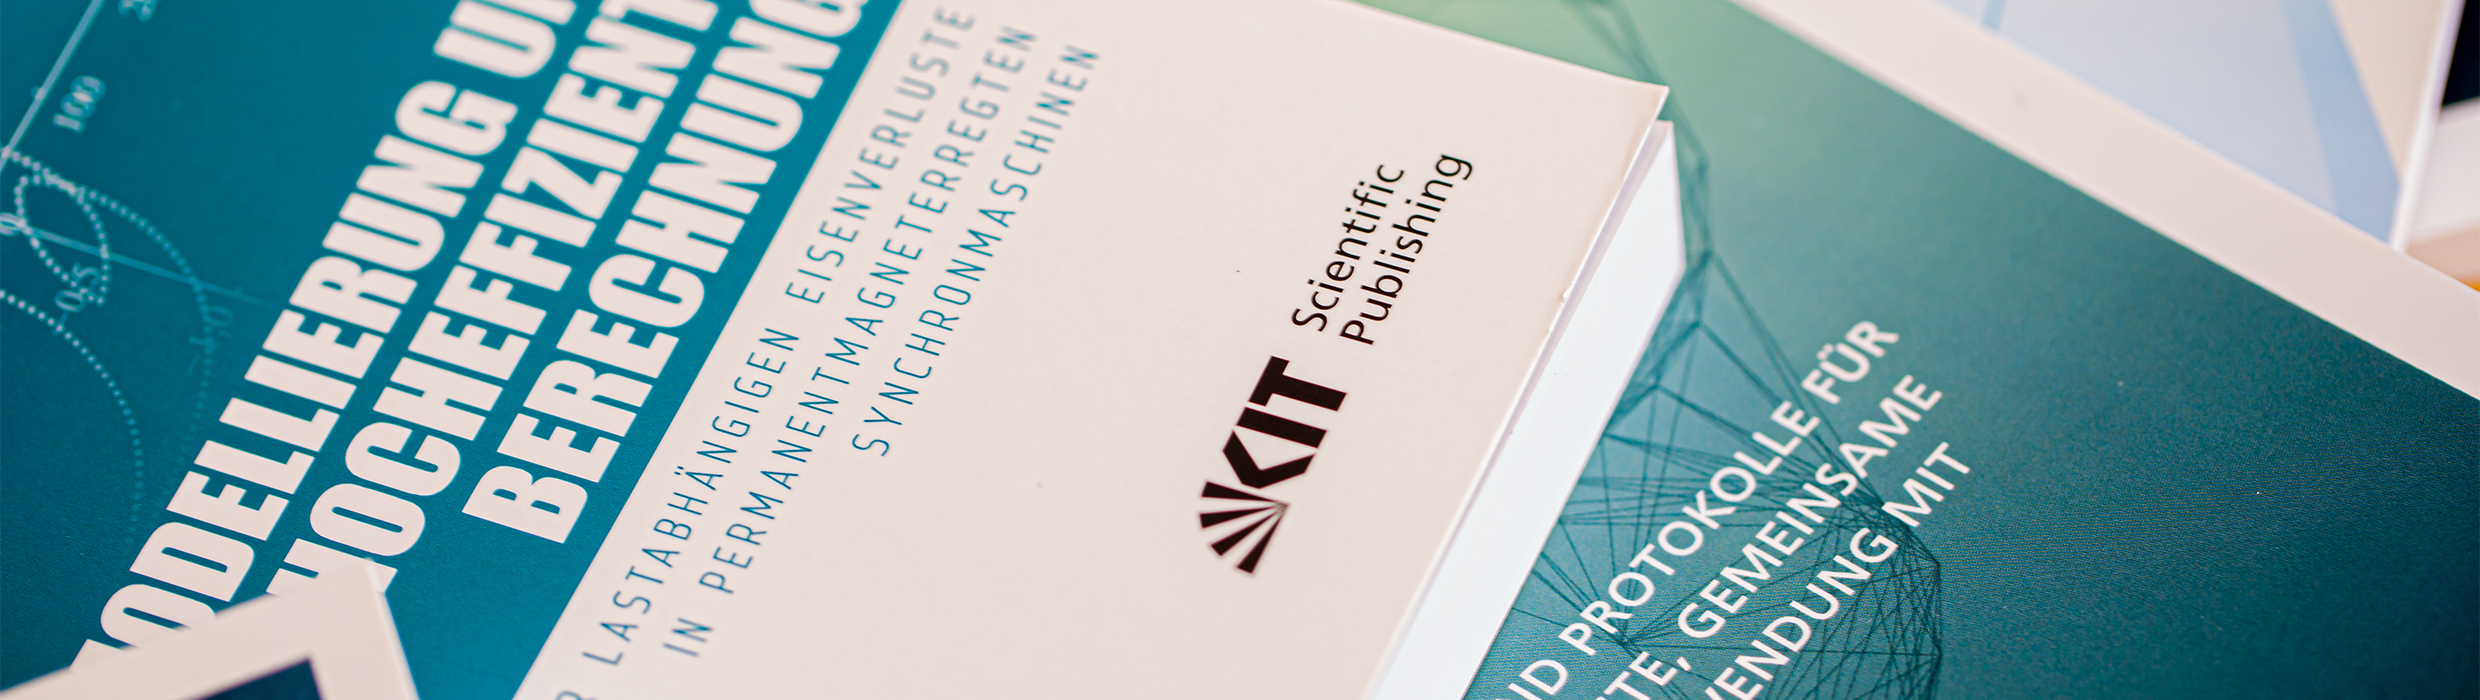 Symbolbild KIT Scientific Publishing Allgemeine Geschäftsbedingungen 